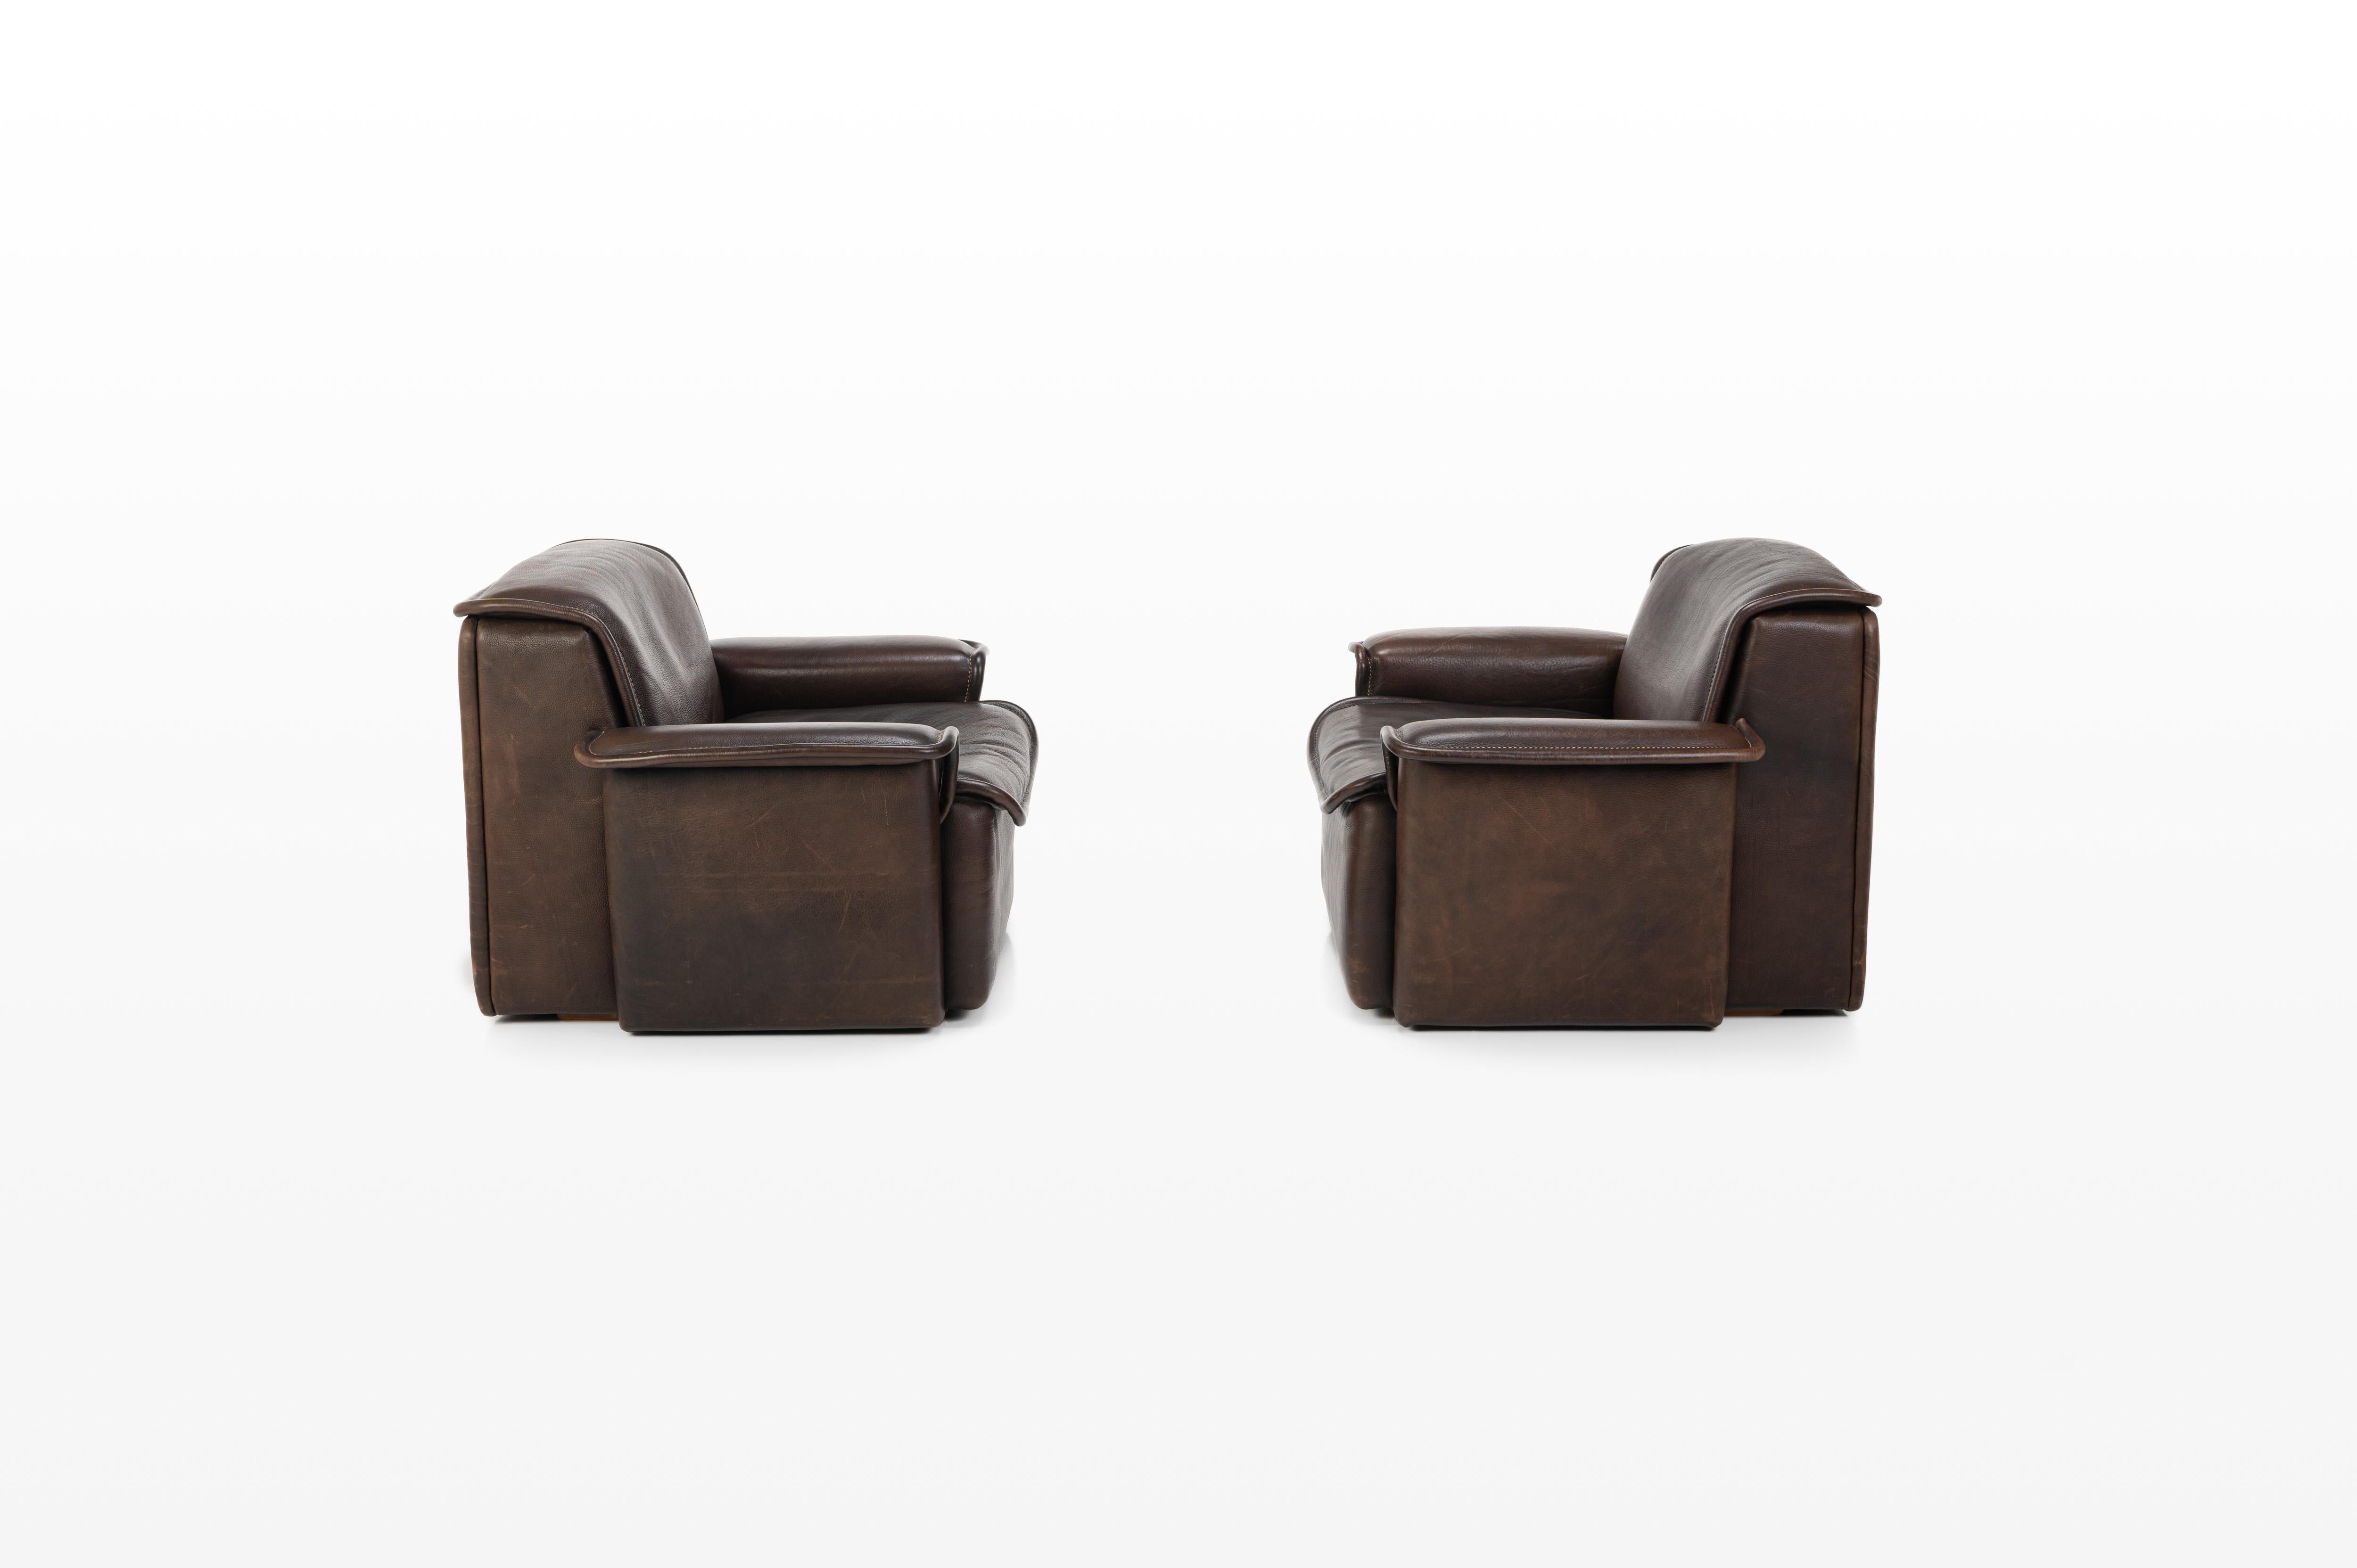 Cet ensemble de sièges vintage exquis, revêtu de cuir de buffle brun foncé, présente le modèle DS12 des années 1970, fabriqué par le collectif de design suisse Team De Sede. Un canapé à trois places est également disponible.

Dimensions :
W: 93,5